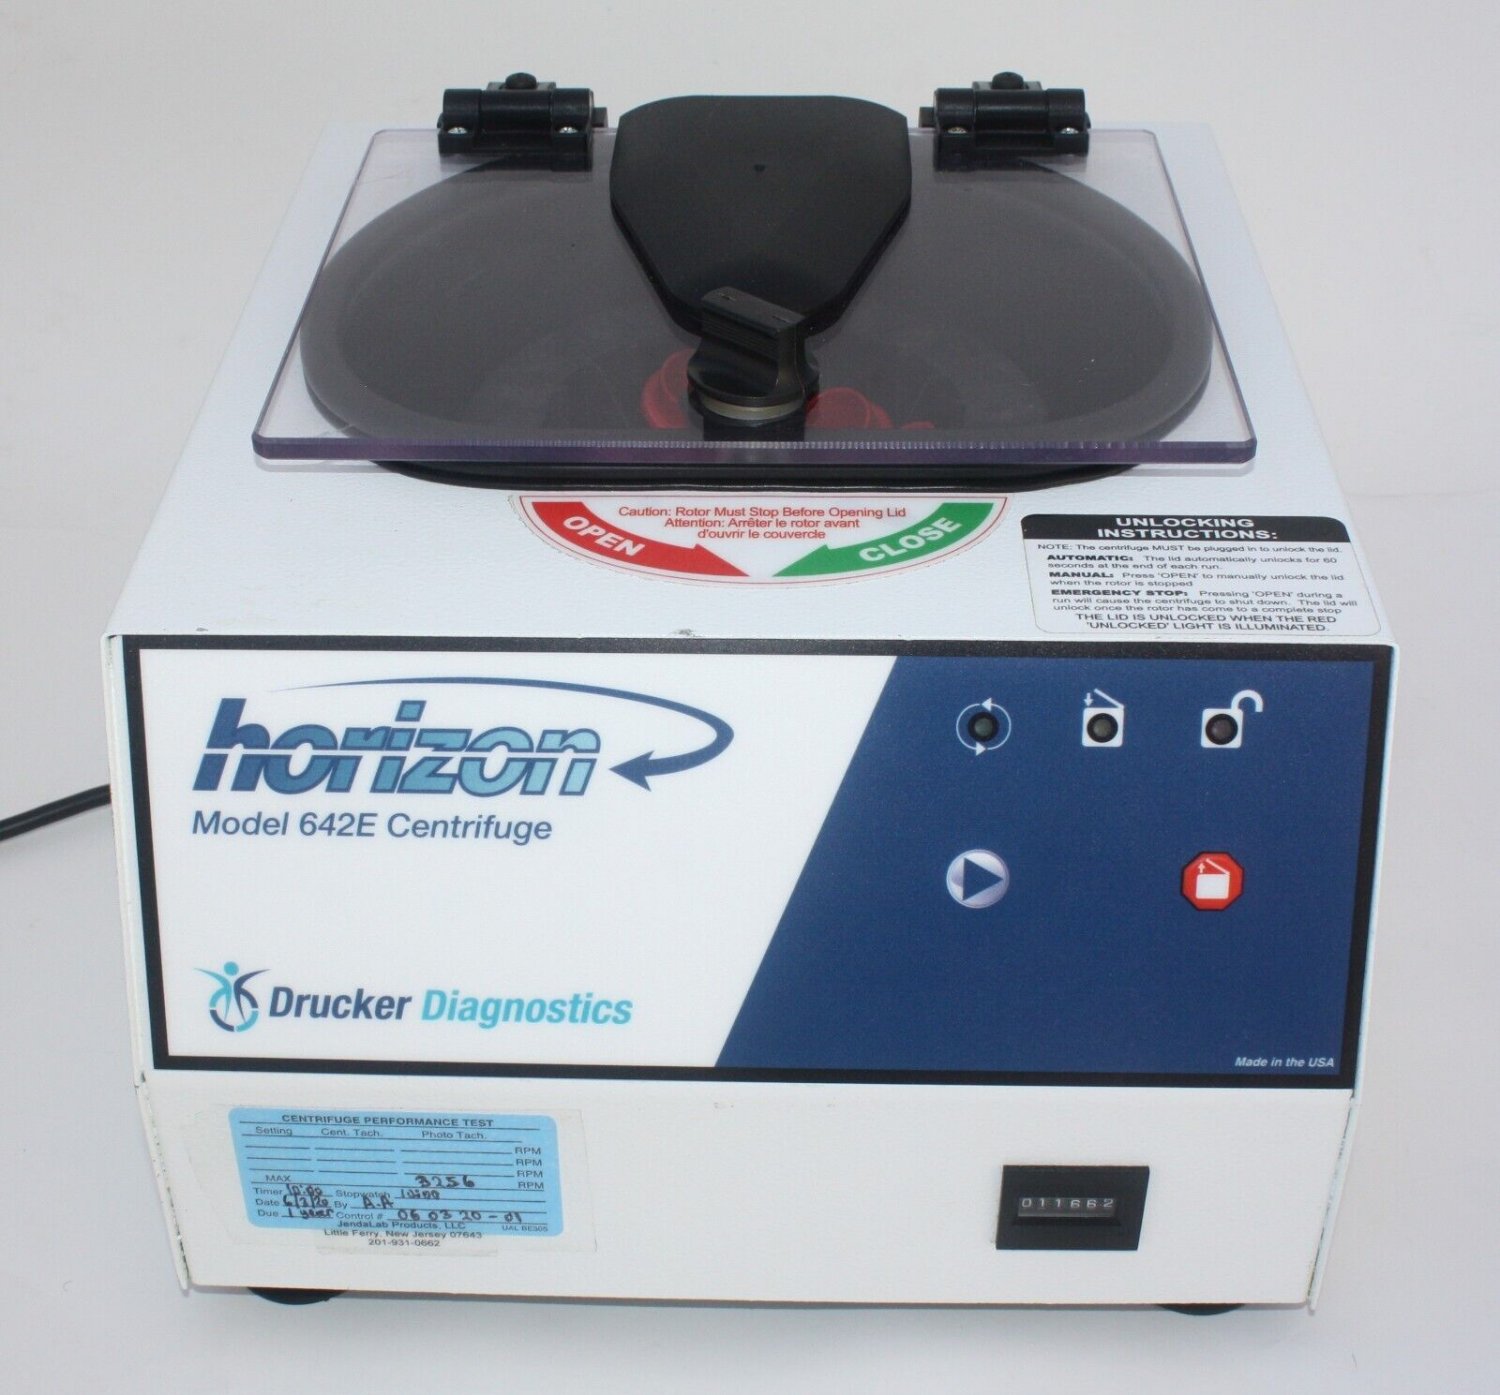 Horizon Centrifuge 642E Drucker Diagnostics